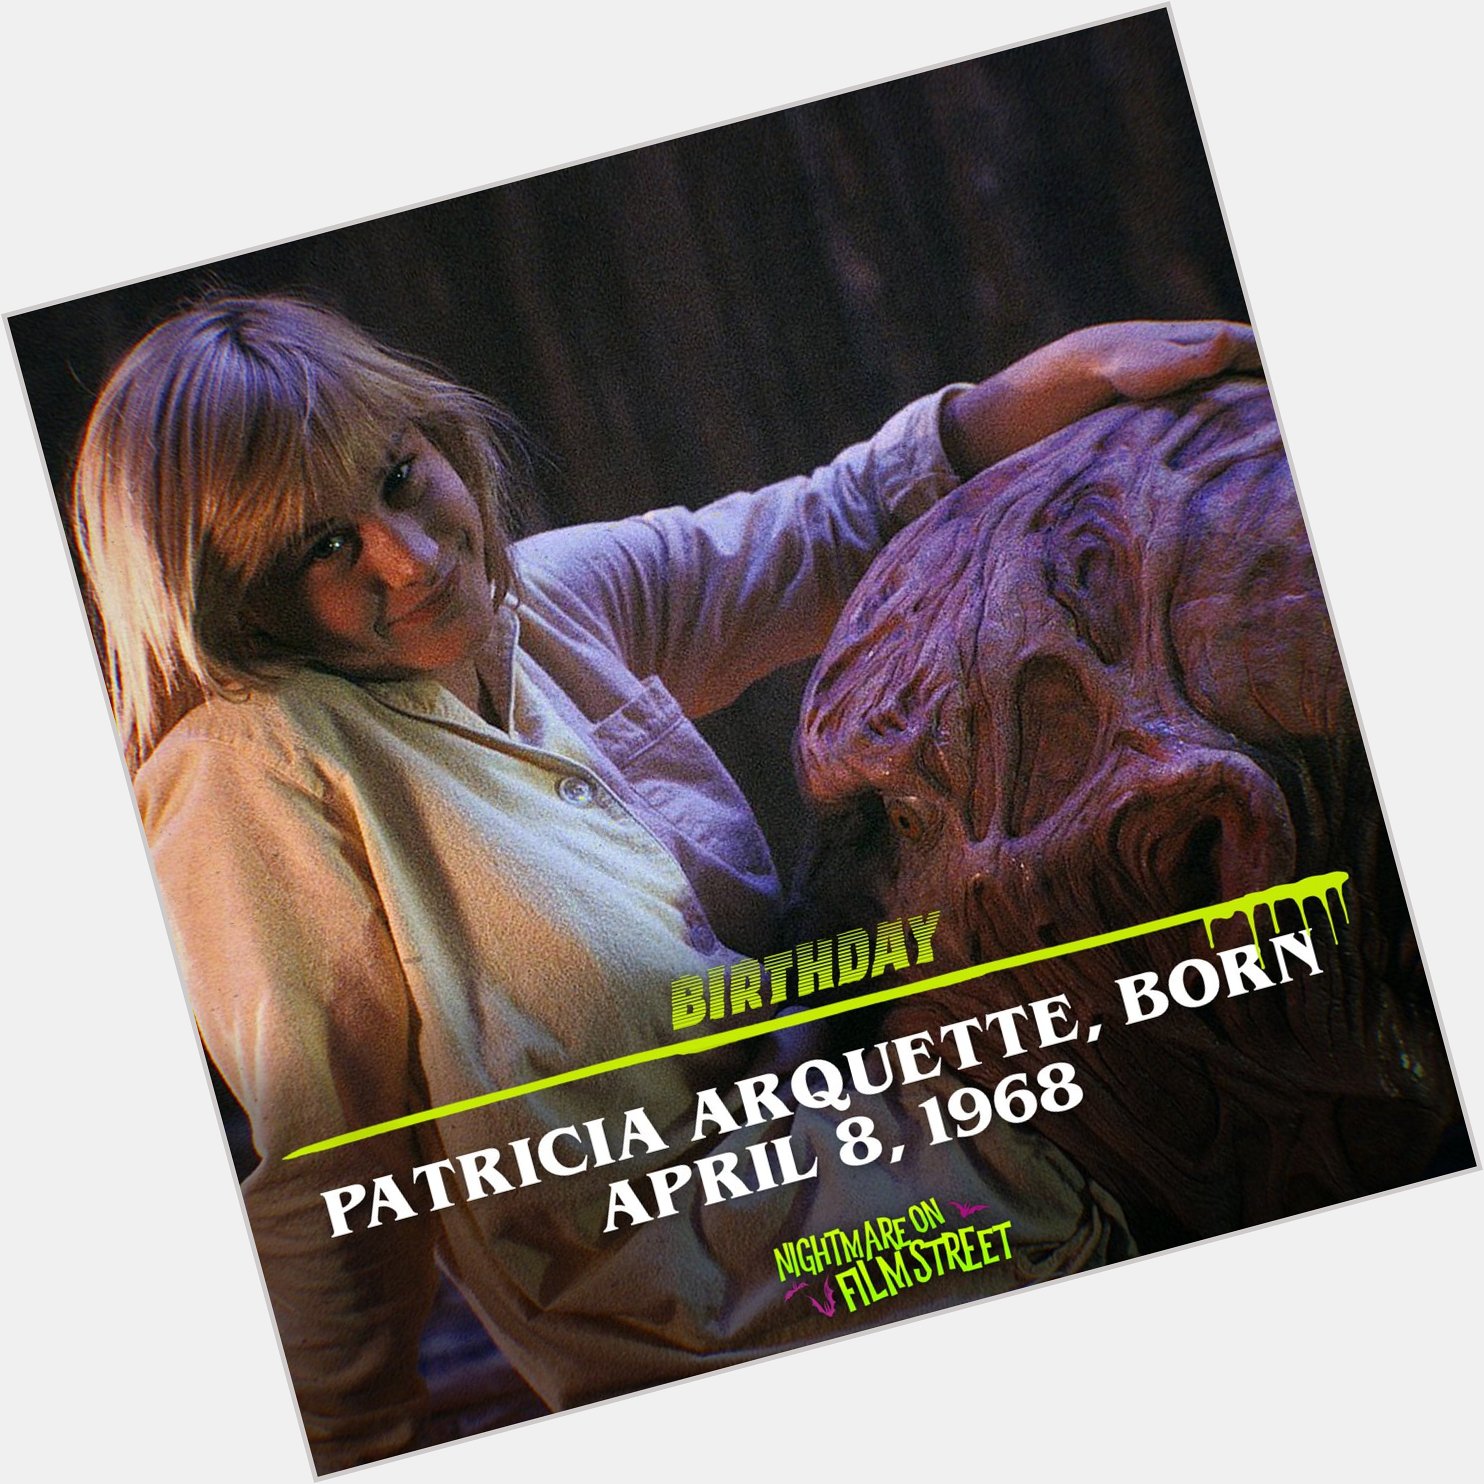 Happy Horror Birthday to our favorite Dream Warrior, PATRICIA ARQUETTE - born in 1968! 